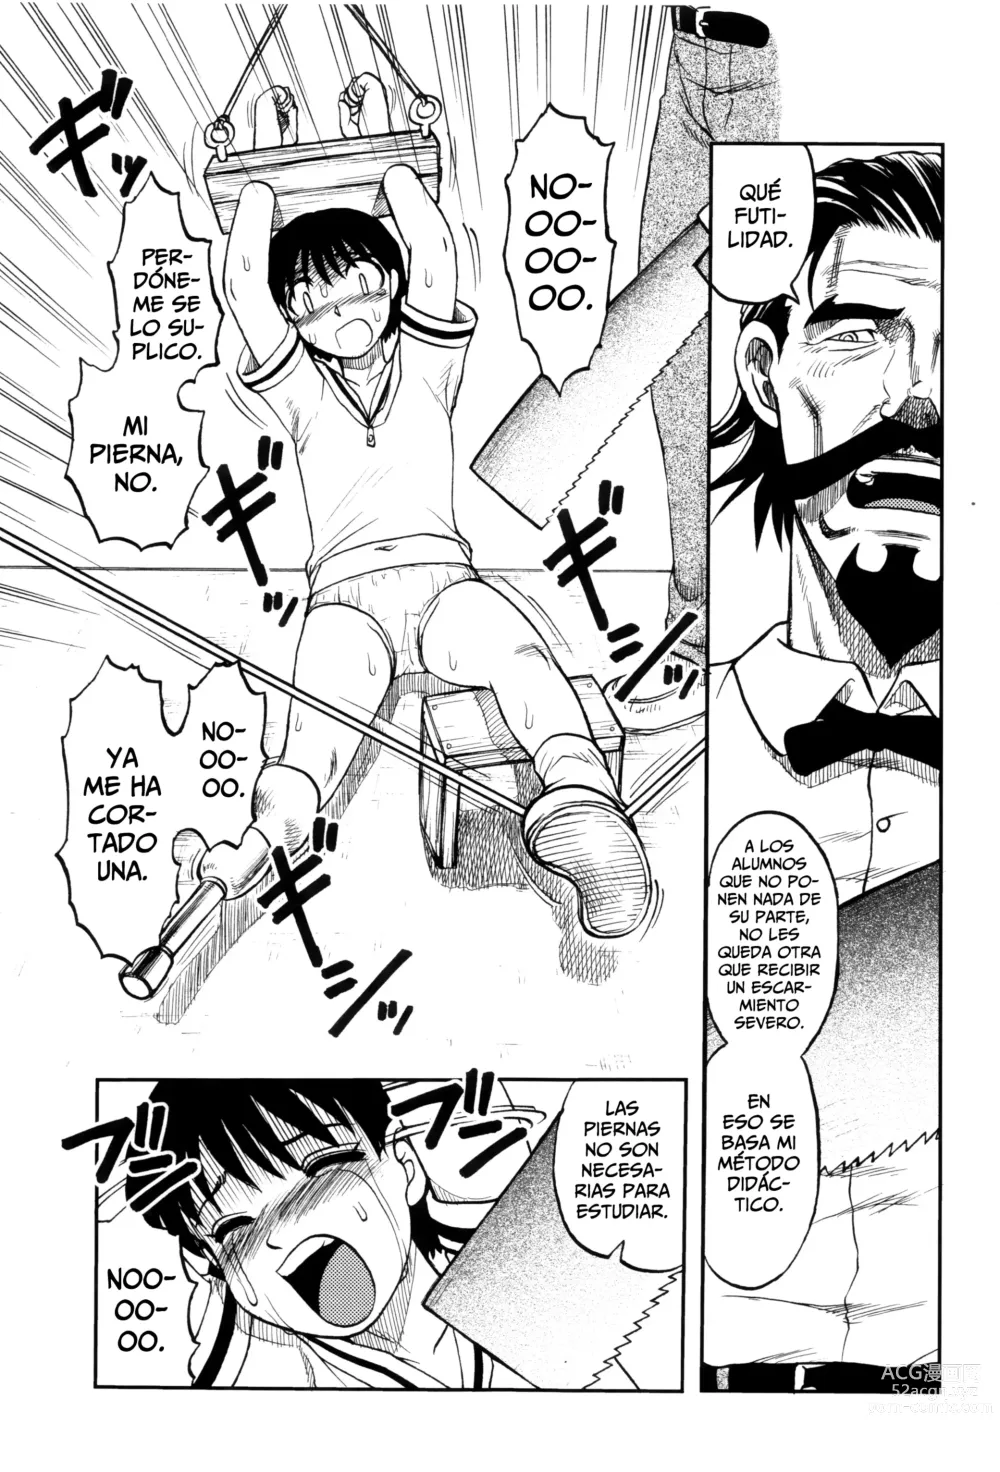 Page 5 of manga El Profesor Salvador Dice Que La Letra Con Sangre Entra